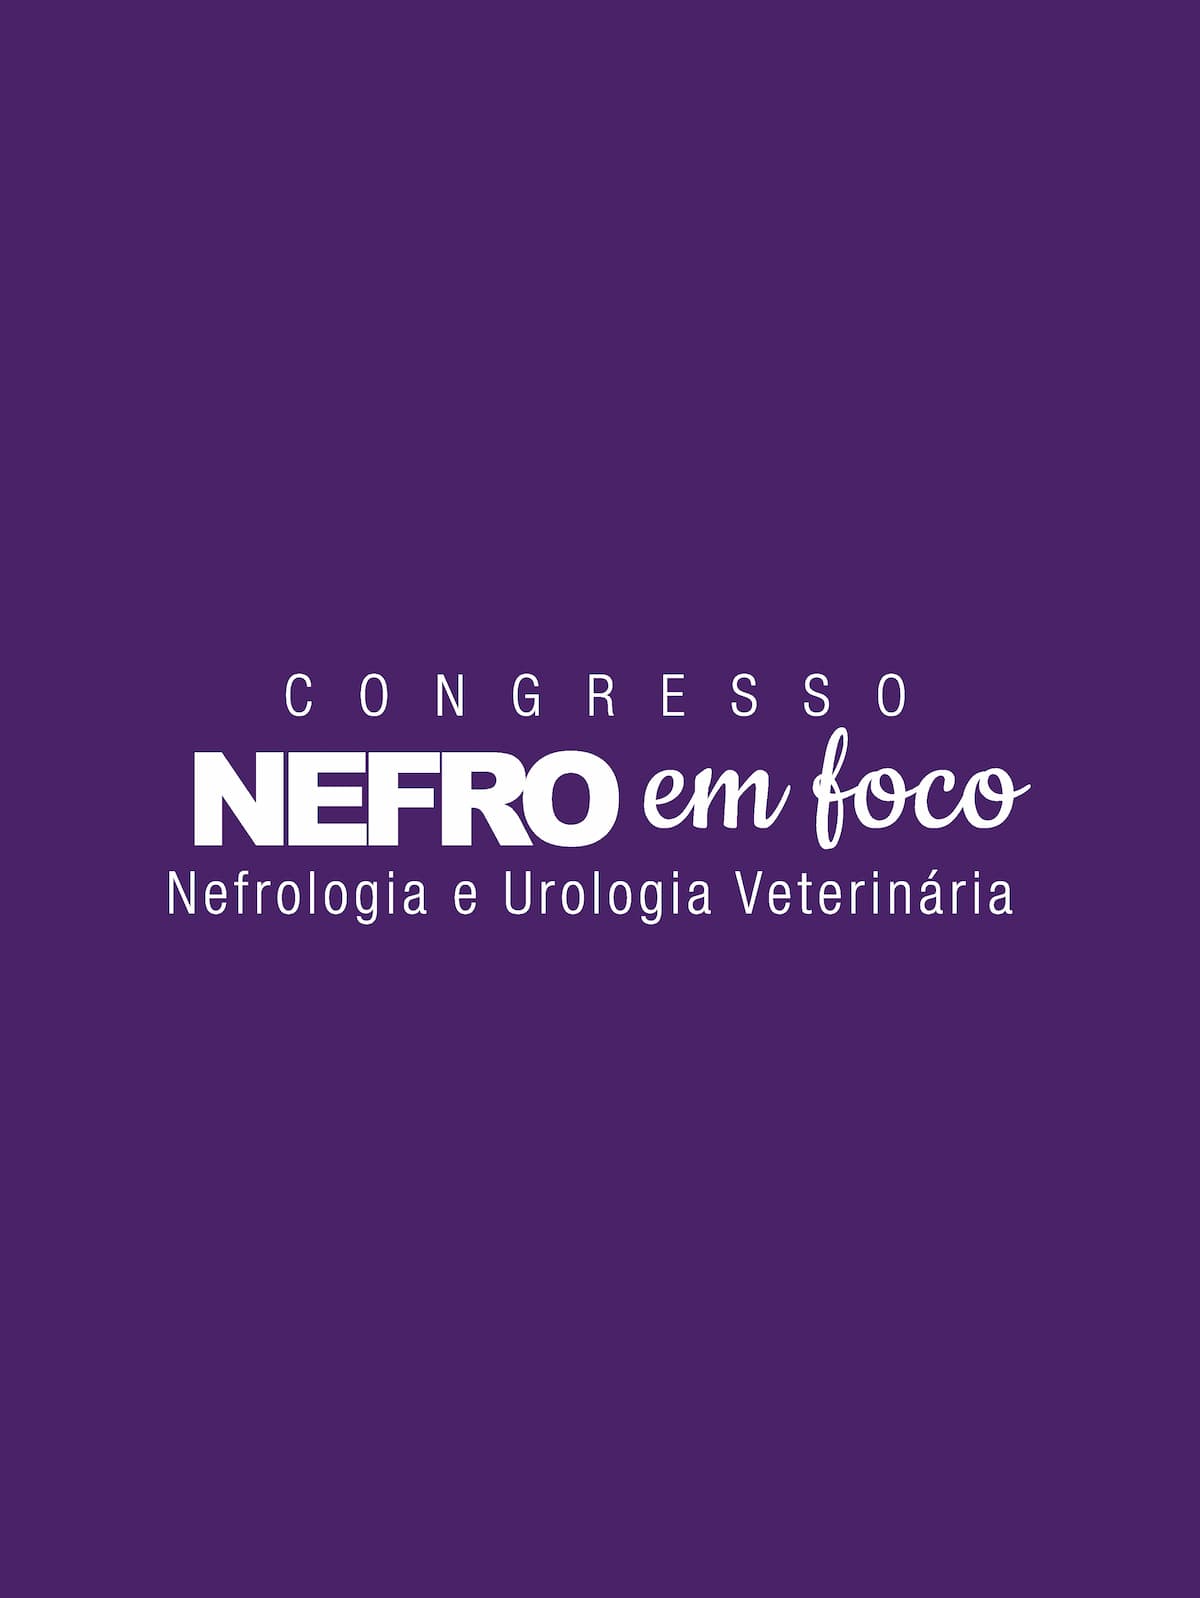 Congresso Nefro em Foco Veterinários entrada para três dias